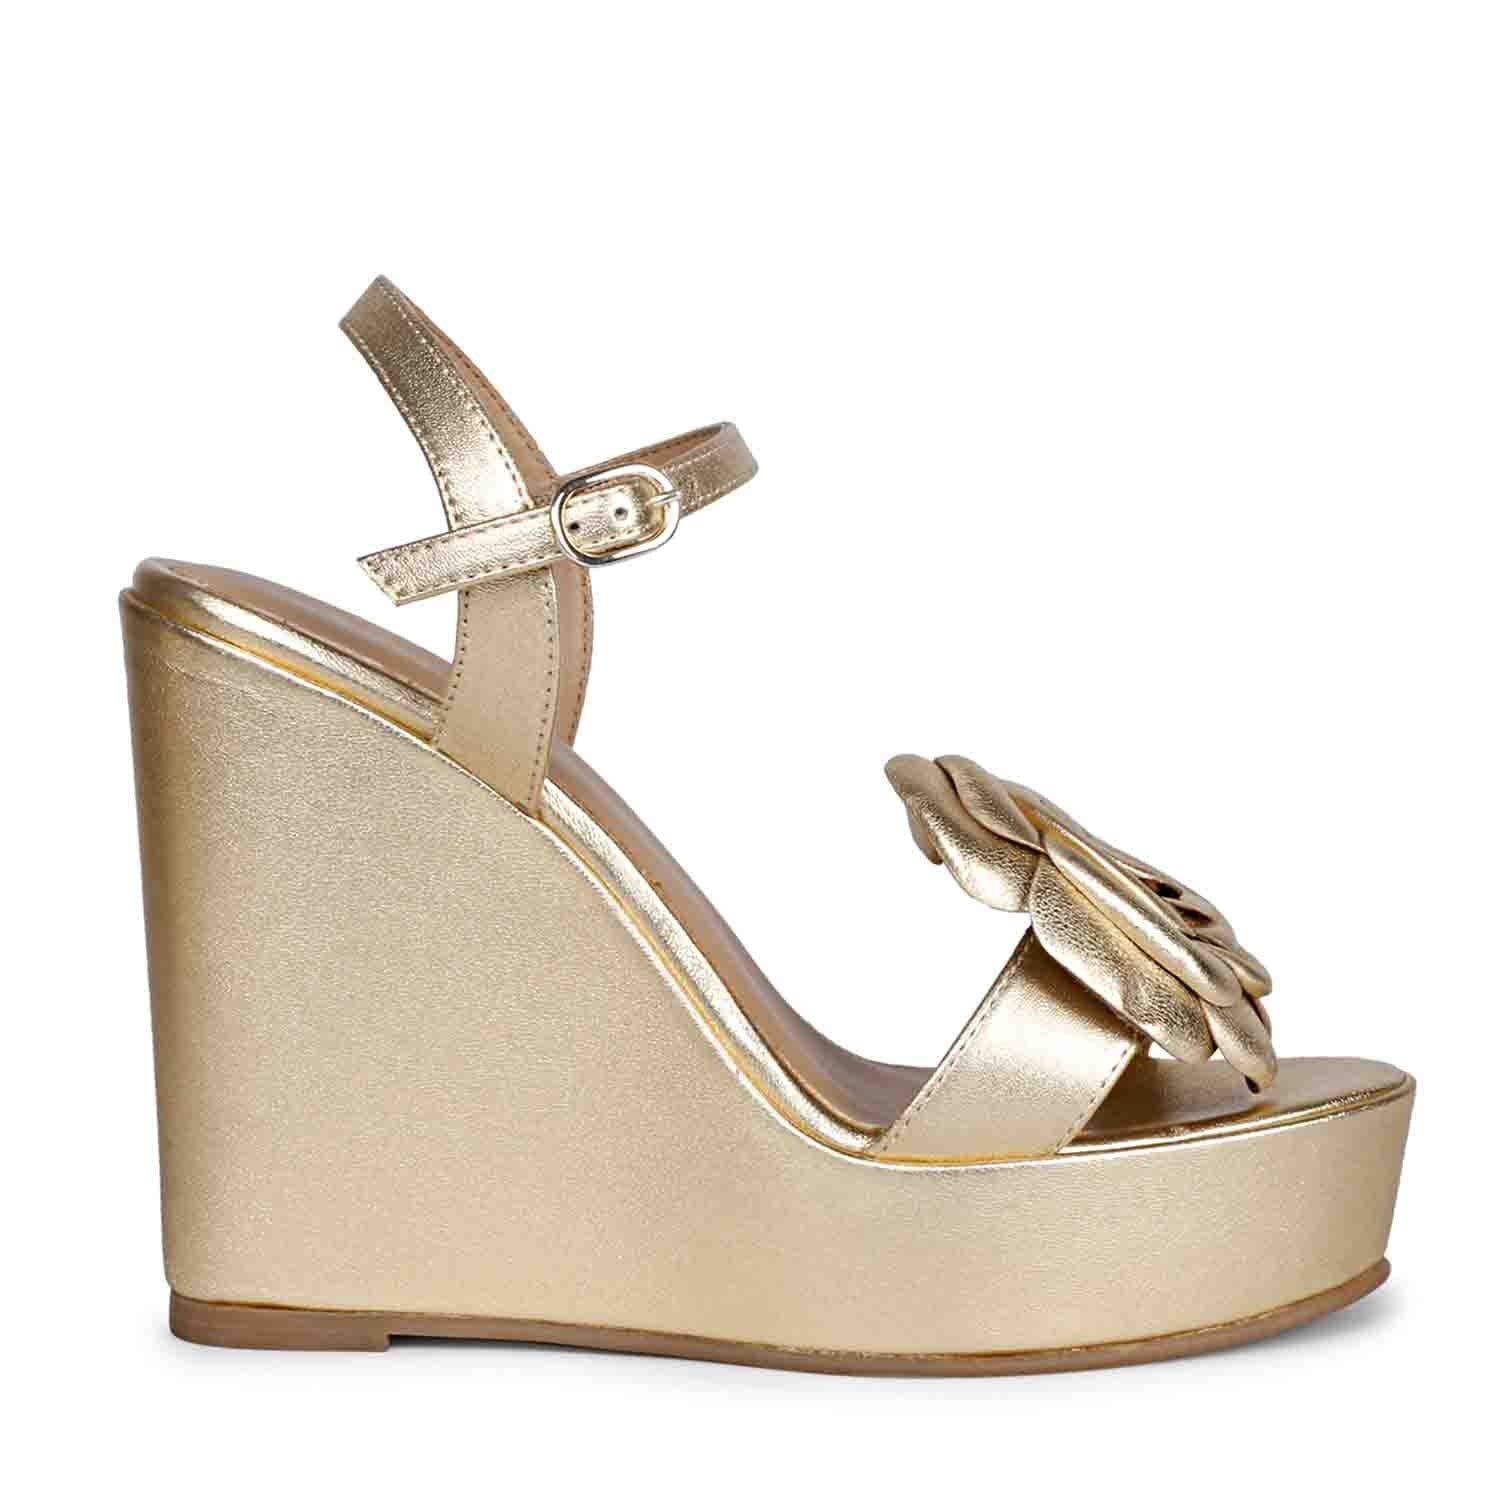 ZOOT BLUE Wedge Heels | Buy Women's HEELS Online | Novo Shoes NZ